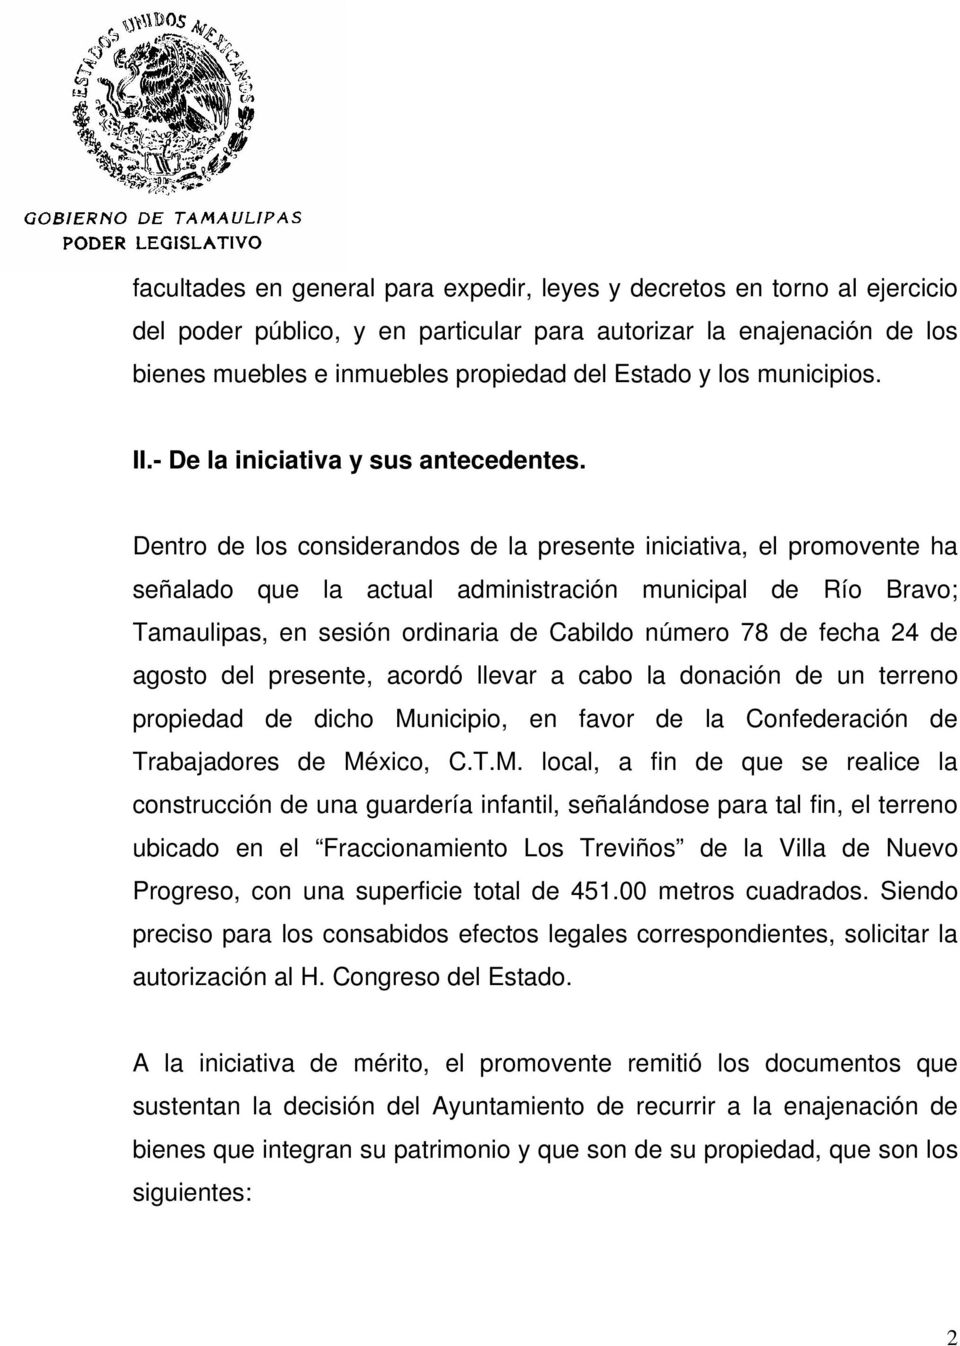 Dentro de los considerandos de la presente iniciativa, el promovente ha señalado que la actual administración municipal de Río Bravo; Tamaulipas, en sesión ordinaria de Cabildo número 78 de fecha 24